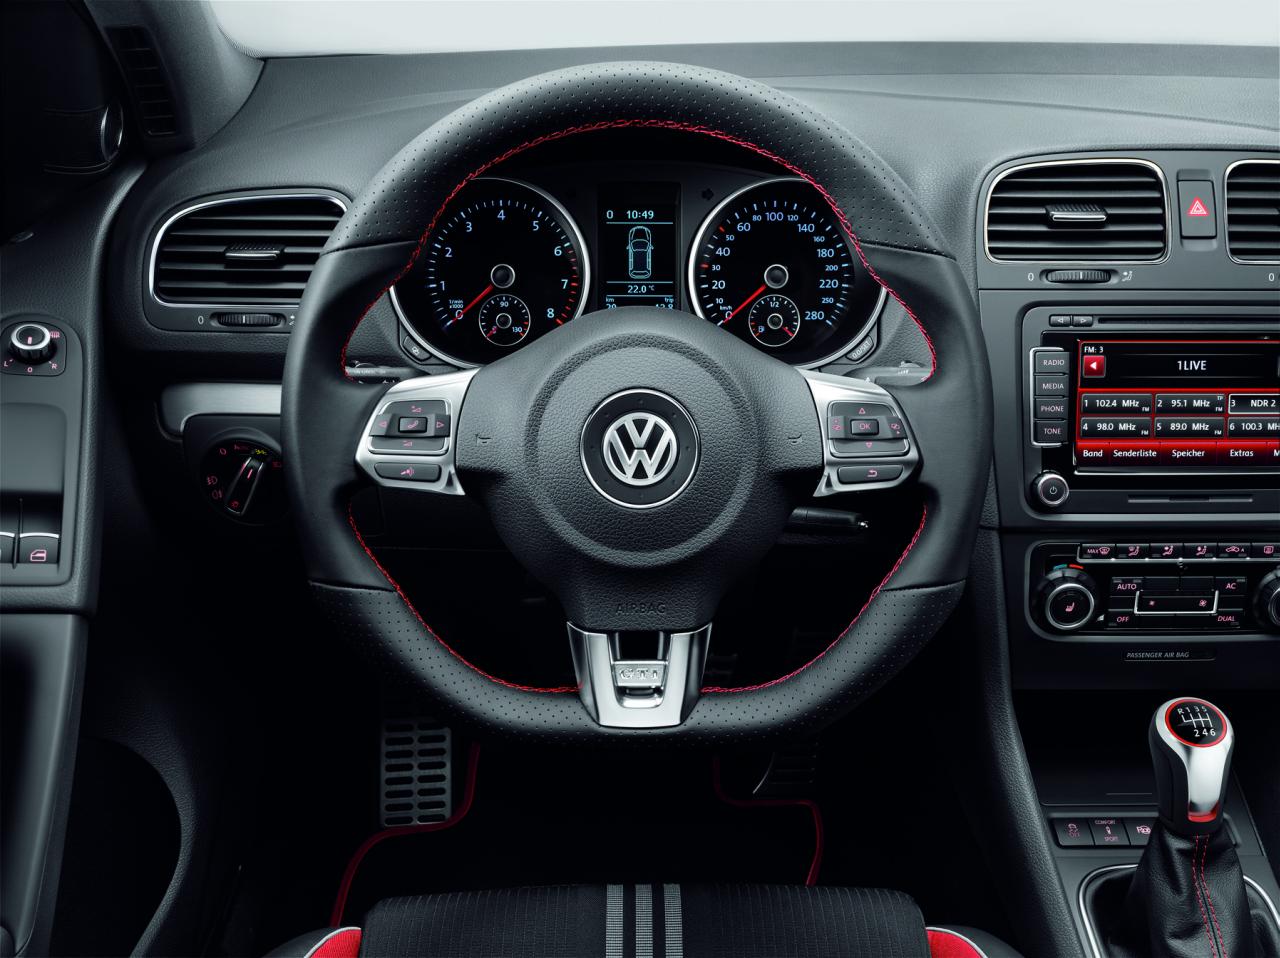 Clásico auricular enfermedad Revista Coche: Volkswagen presenta su Golf GTI Adidas edición